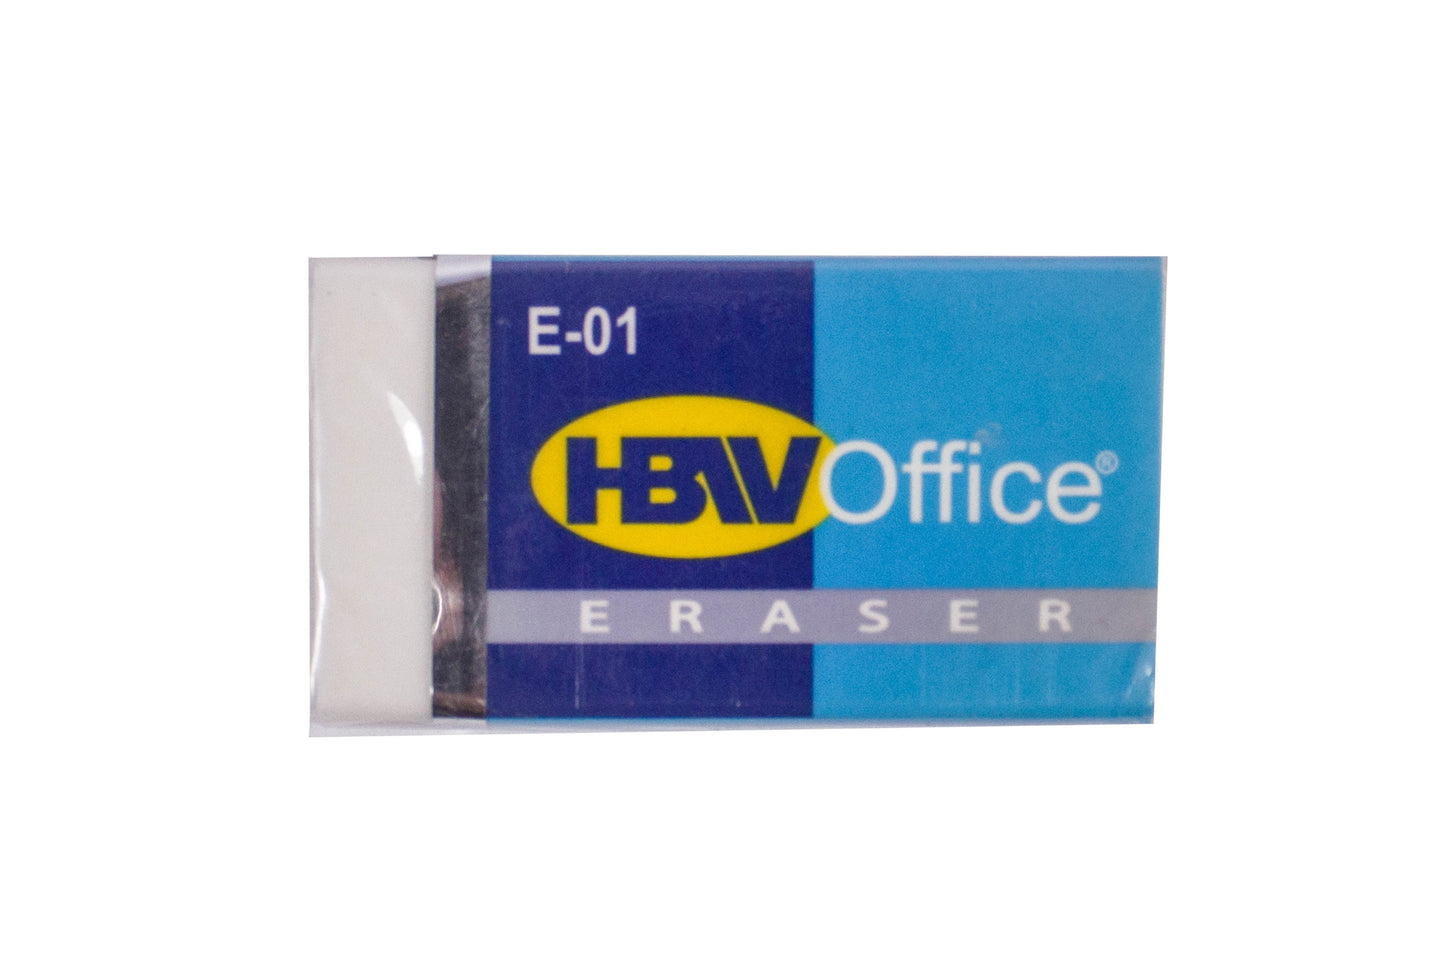 HBW Office Eraser E-01 40pcs